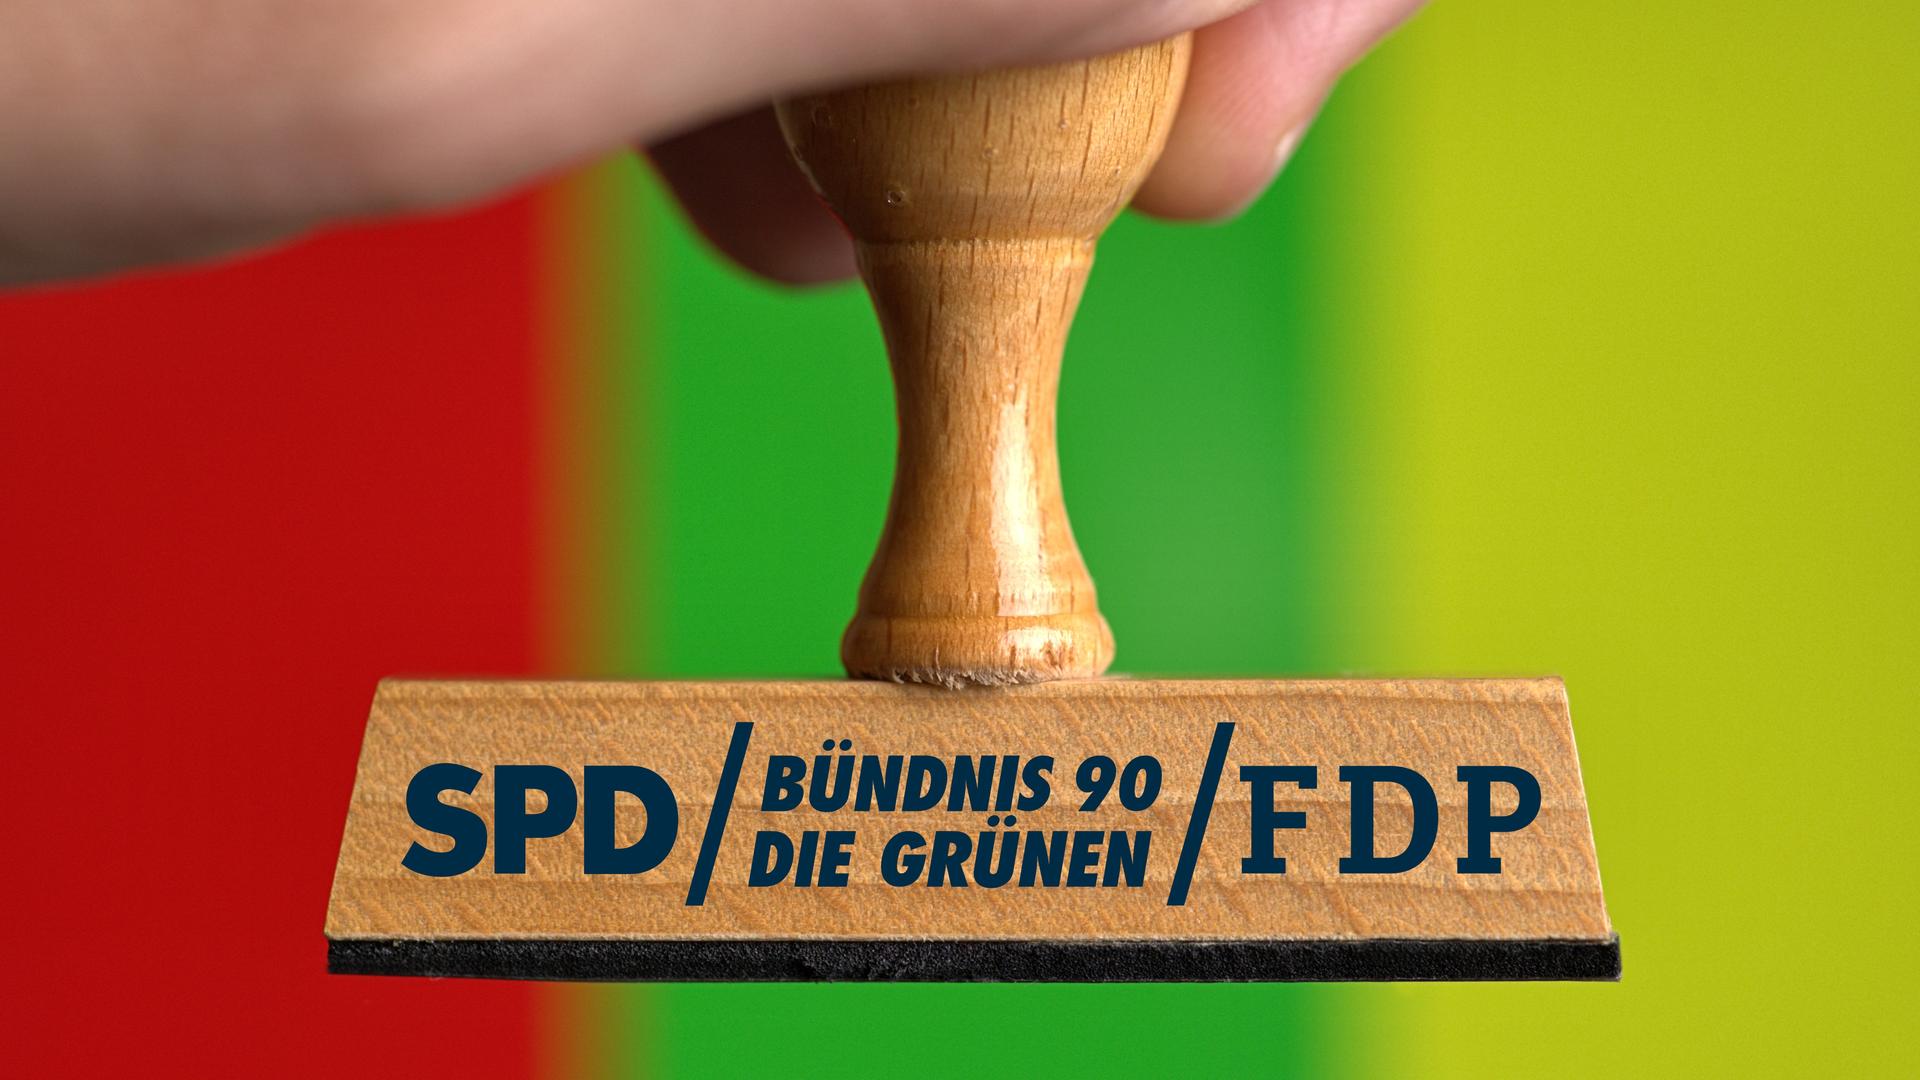 Eine Hand hält einen Holzstempel, auf dem die Parteilogos von SPD, Bündnis 90/Die Grünen und FDP stehen. Der Hintergrund ist rot-grün-gelb gestreift.